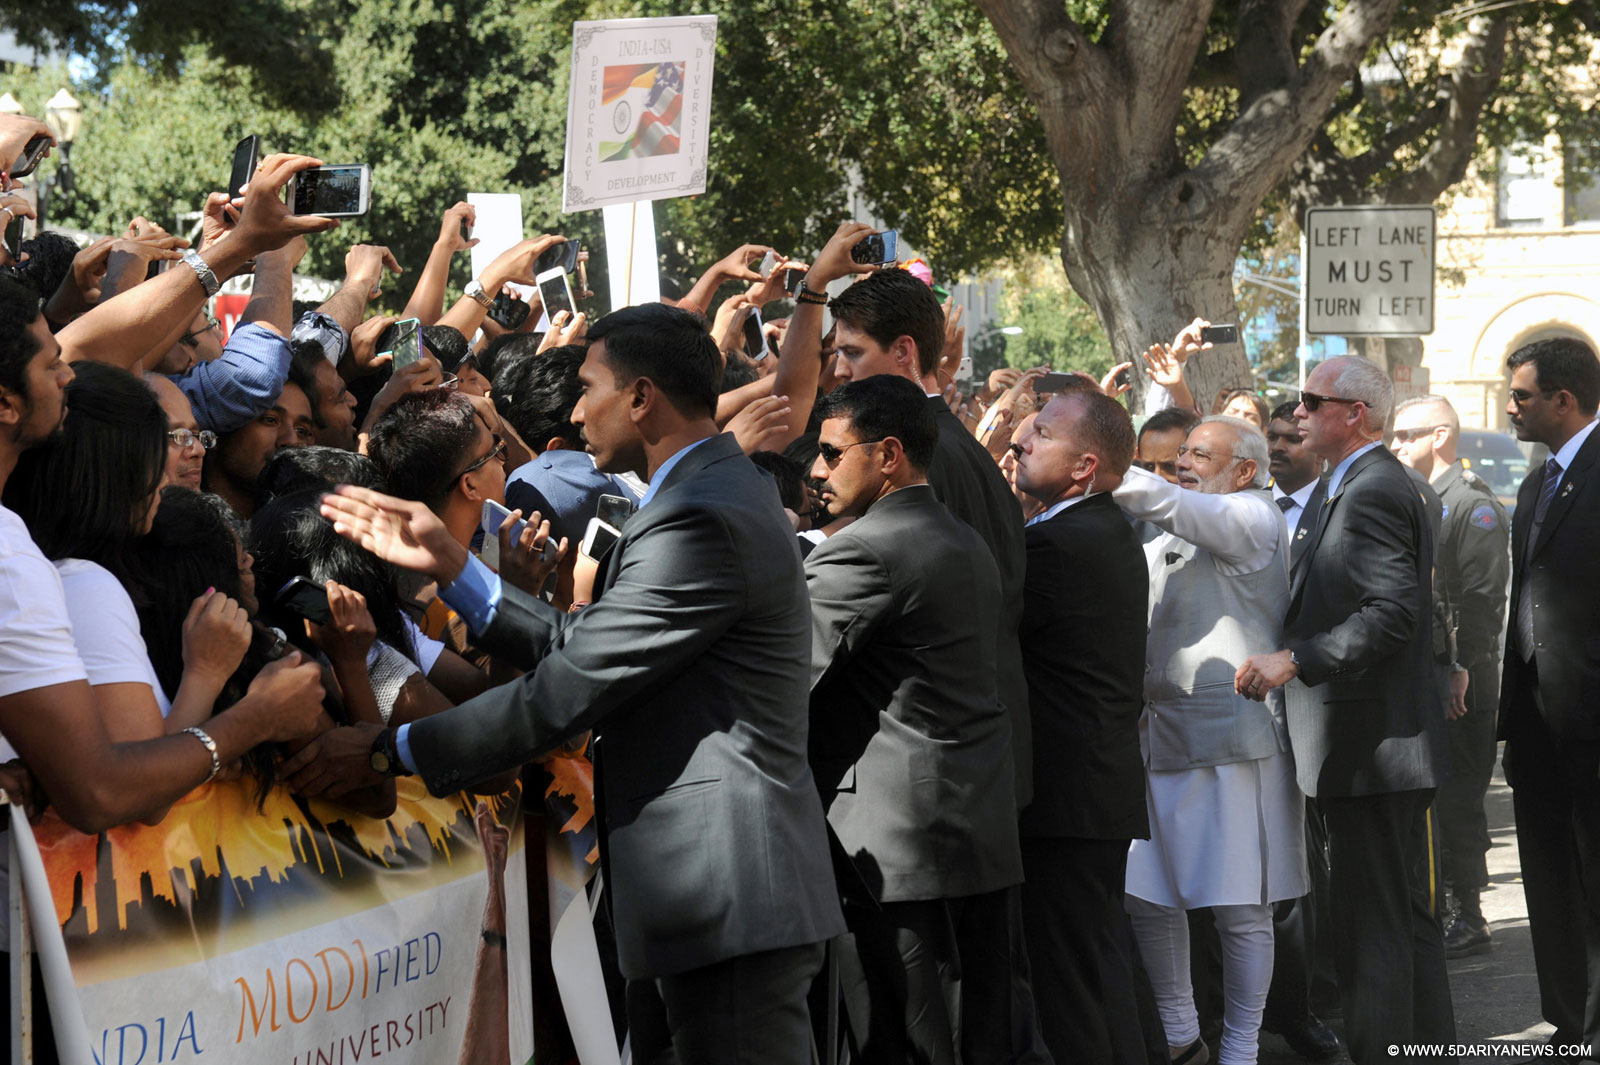 The public reception as the Prime Minister, Shri Narendra Modi arrives at the Fairmont San Jose Hotel on September 26, 2015.